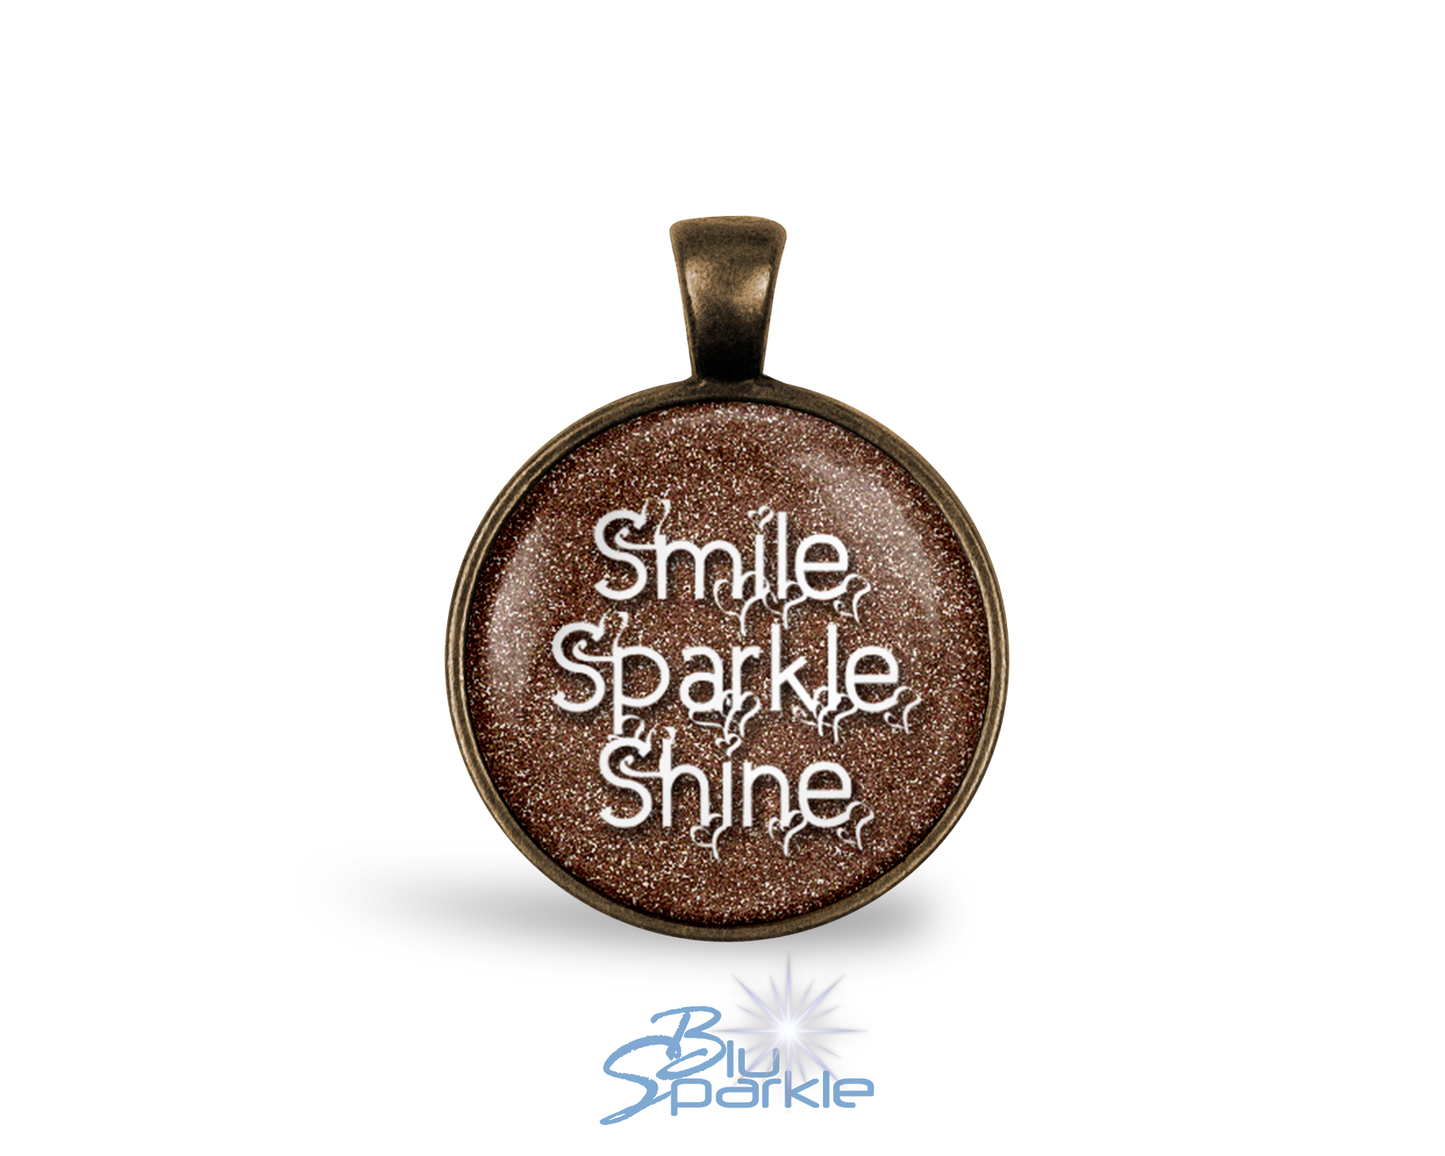 Smile Sparkle Shine - Round Pendants